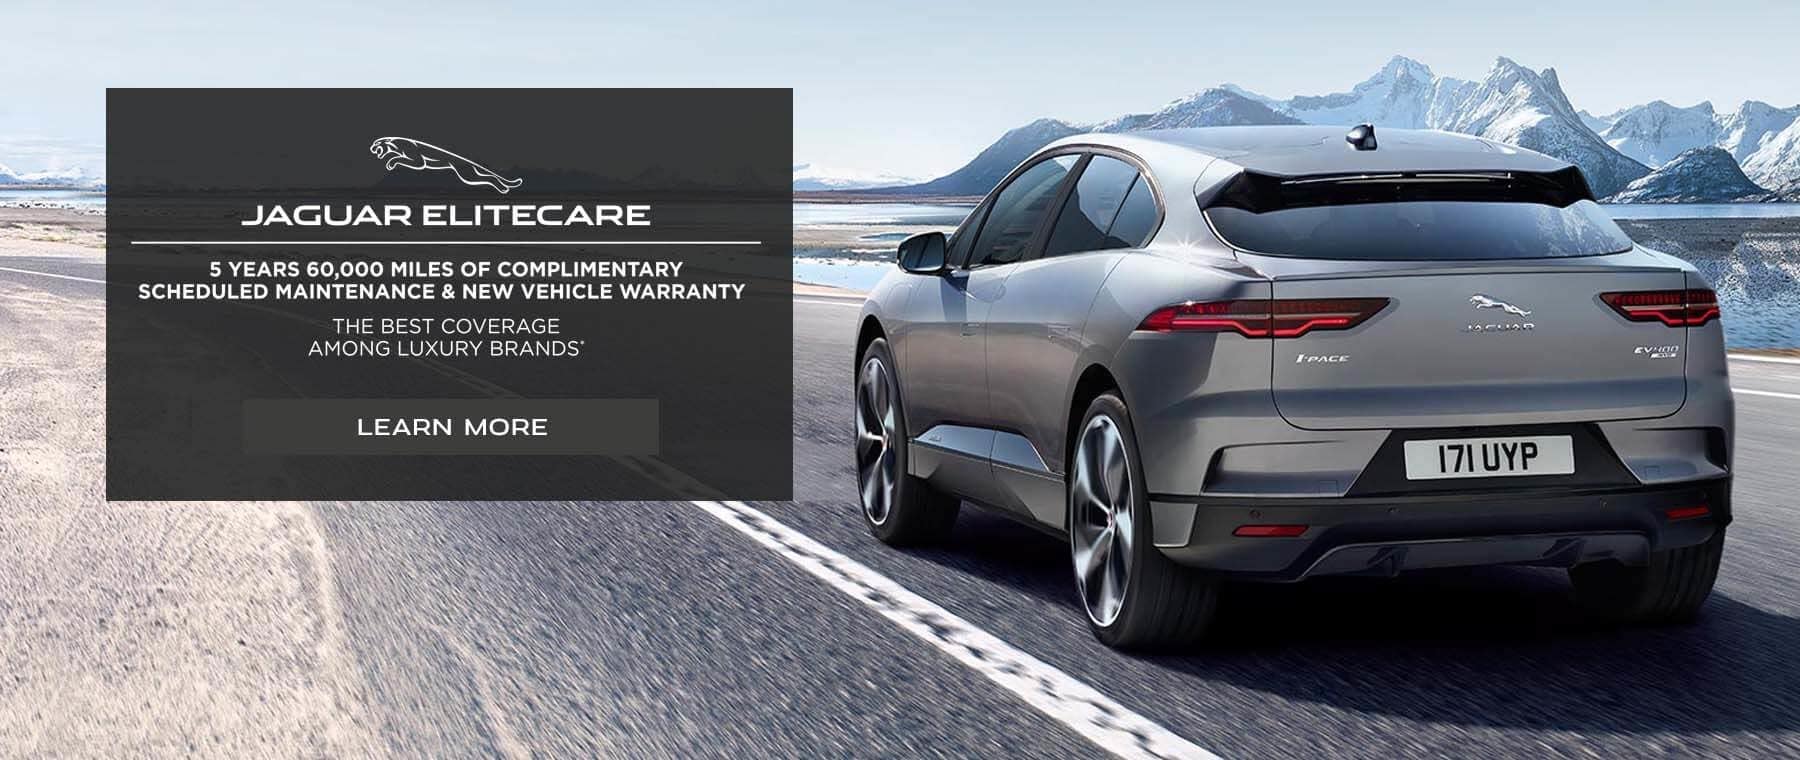 Jaguar Elitecare